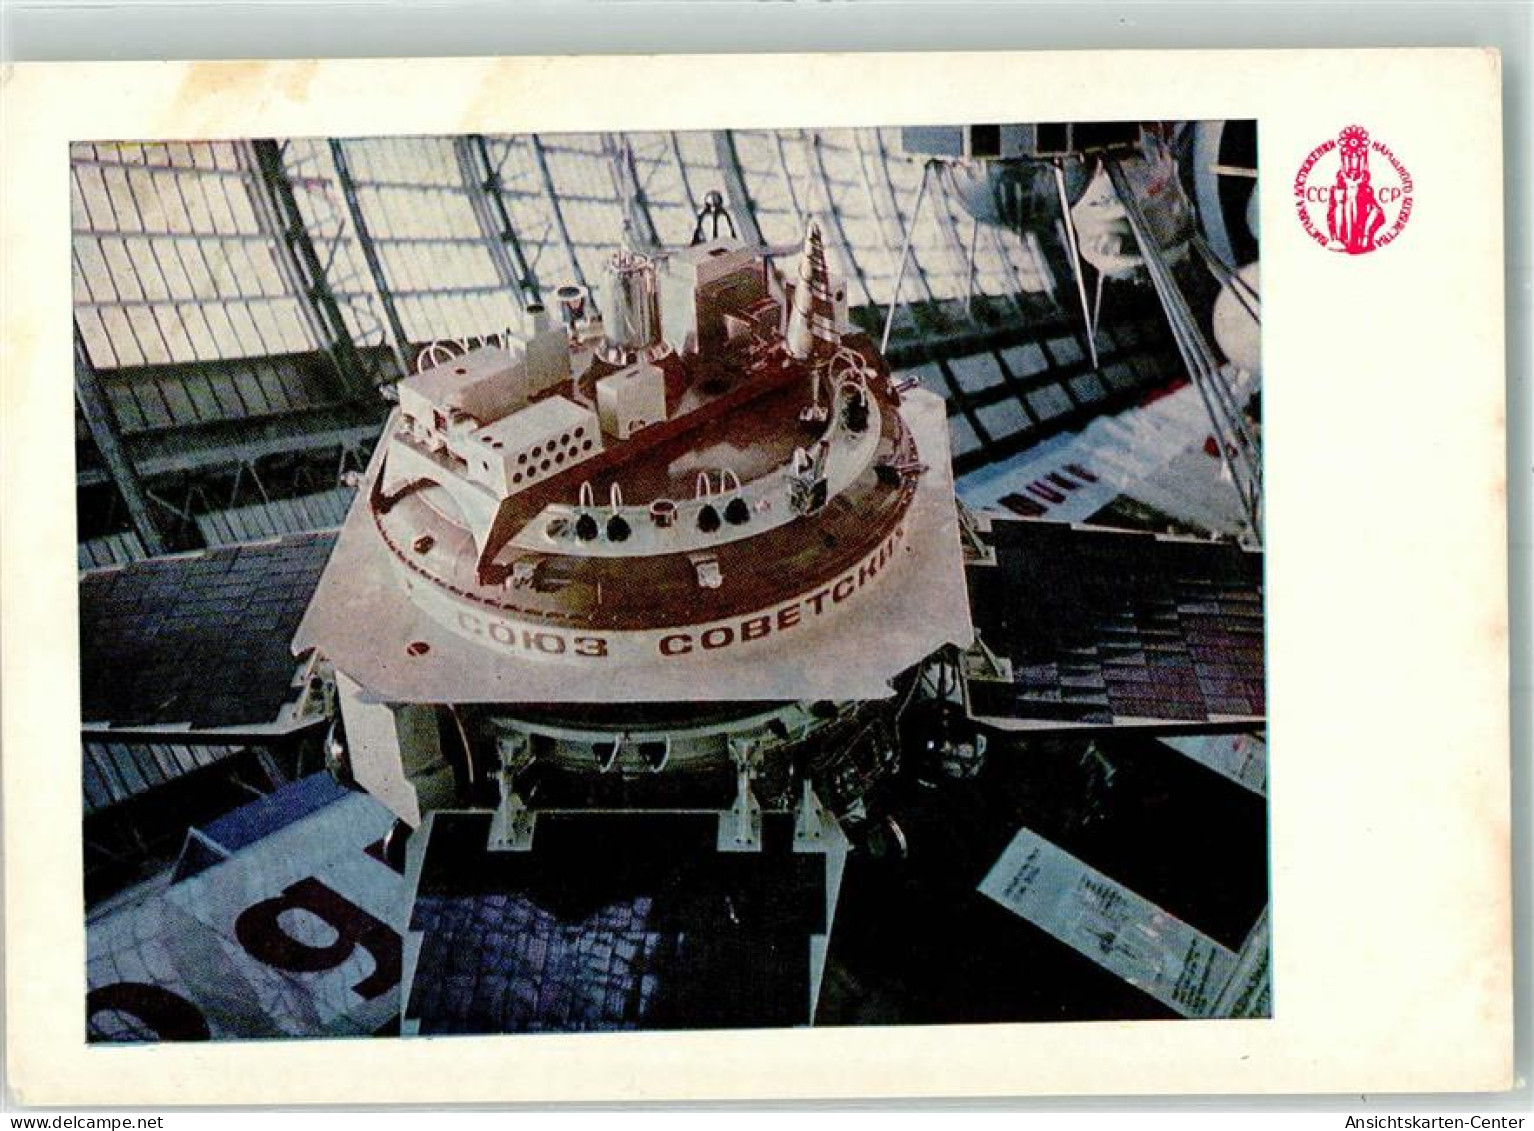 39806308 - Die Sowjetische Automatische Station Prognoz - Space